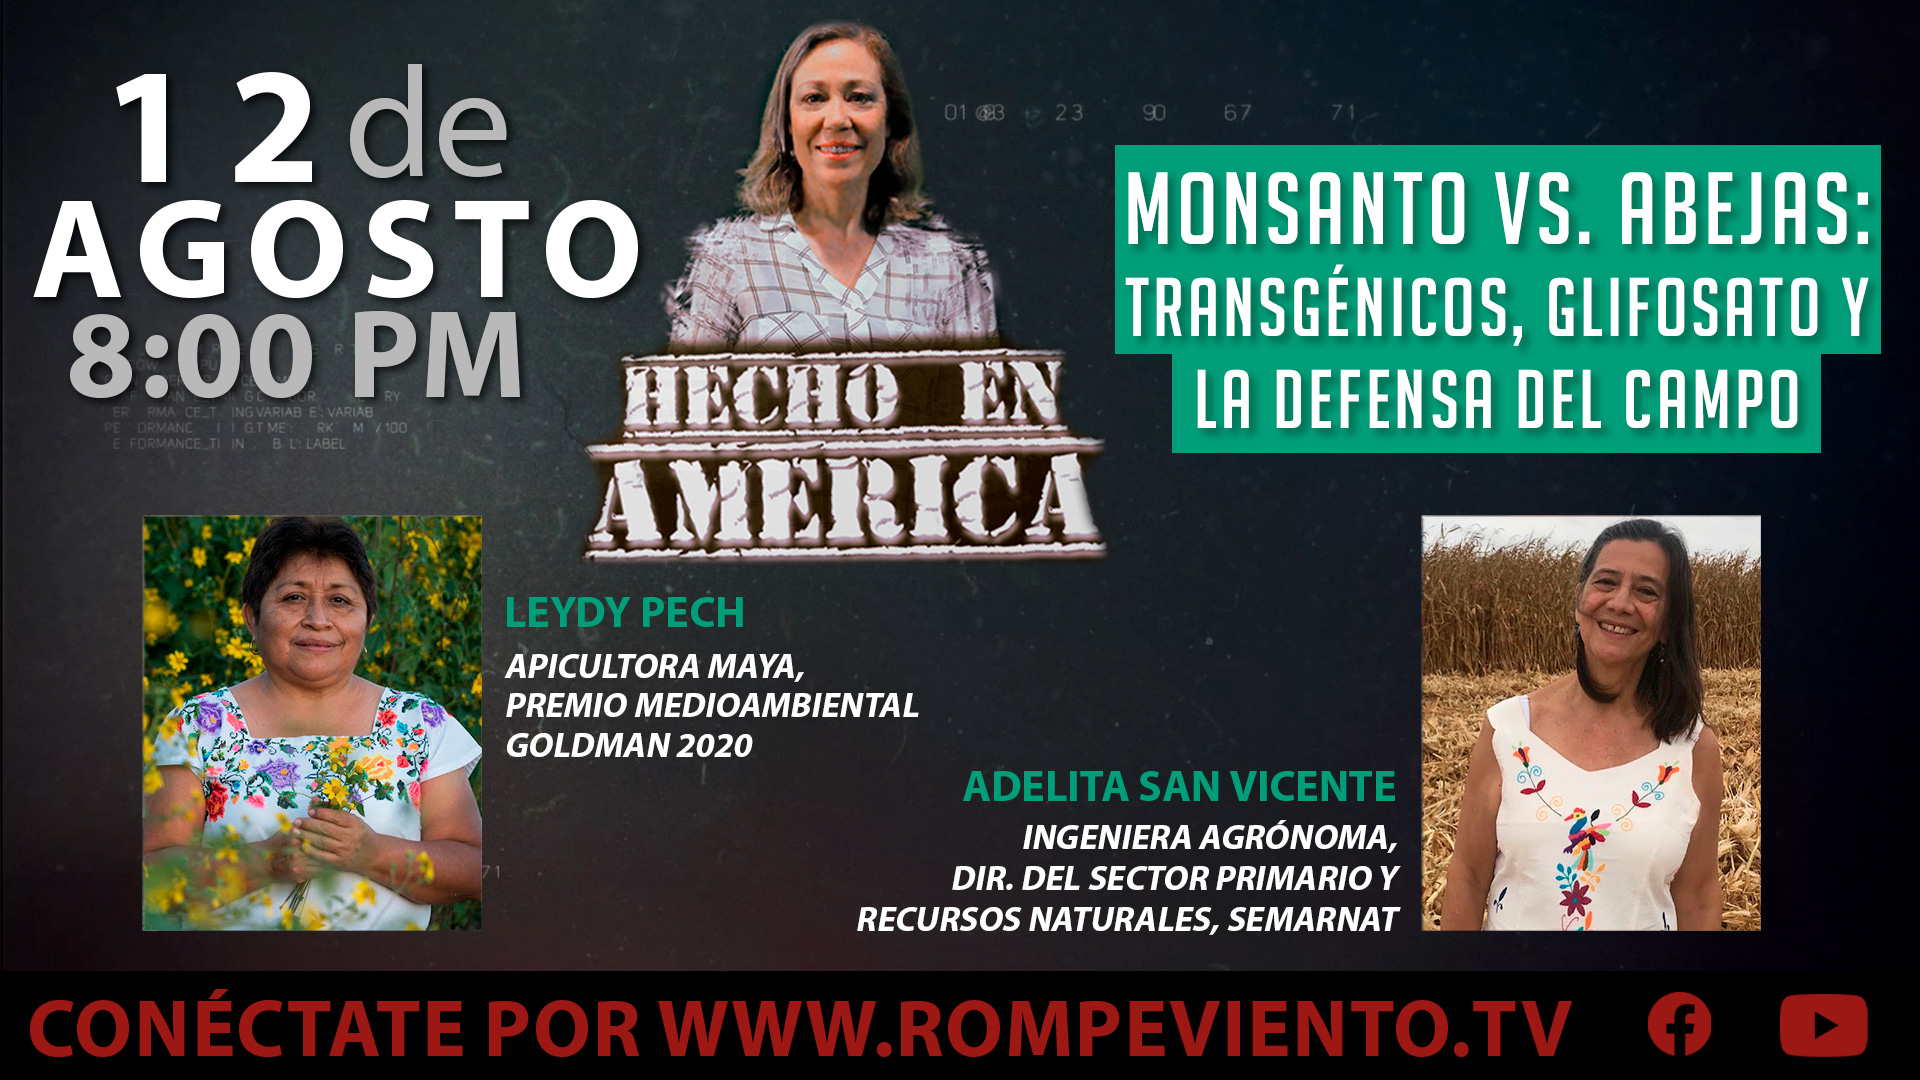 Monsanto vs. Abejas: Transgénicos, glifosato y la defensa del campo - Hecho en América